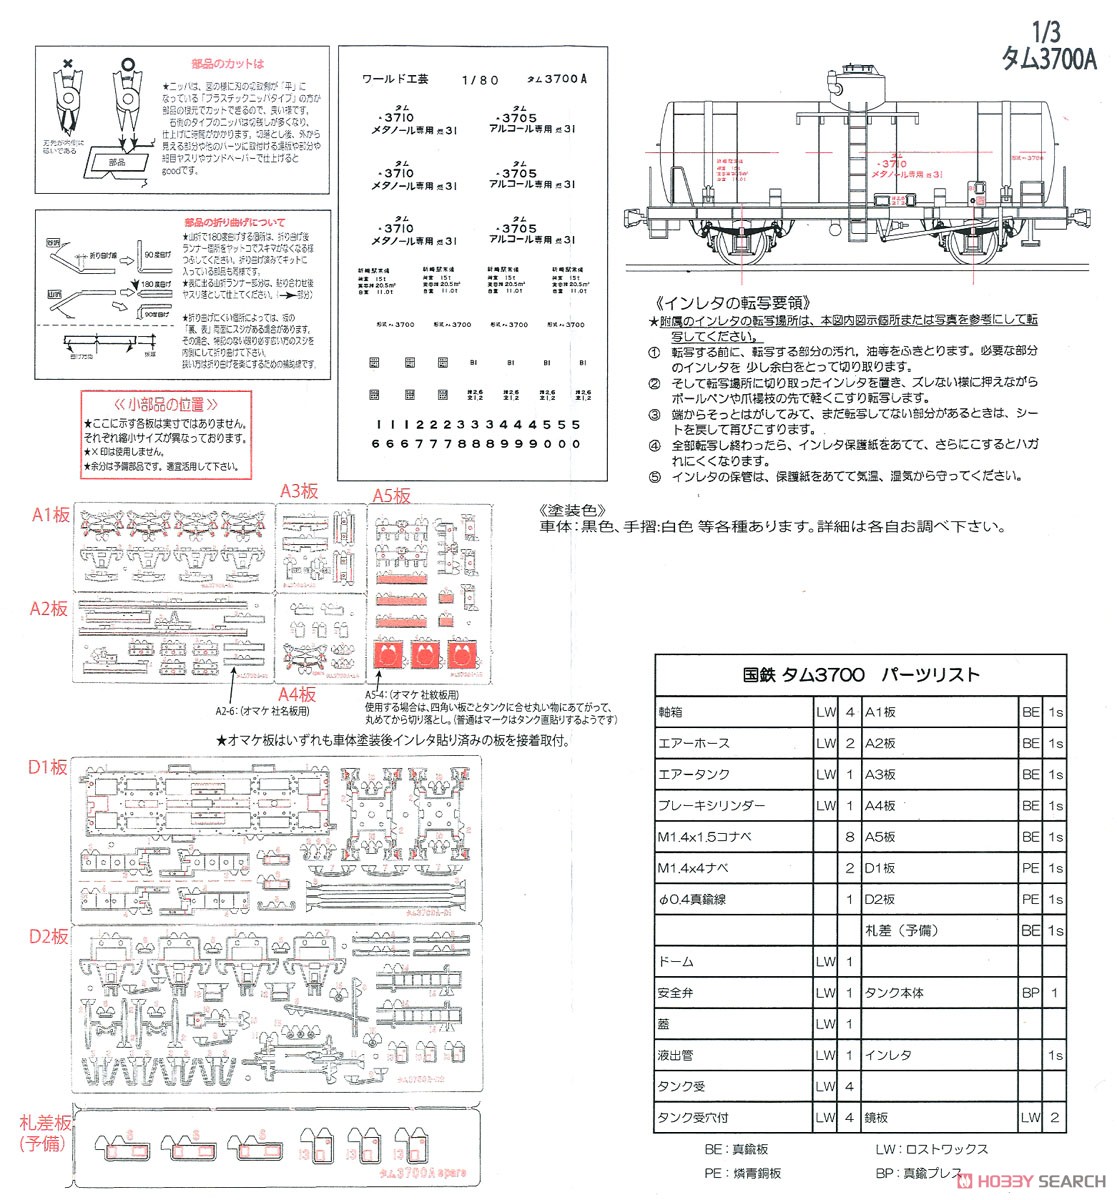 16番(HO) タム3700形 メタノール専用タンク車 typeA 組立キット (組み立てキット) (鉄道模型) 設計図1